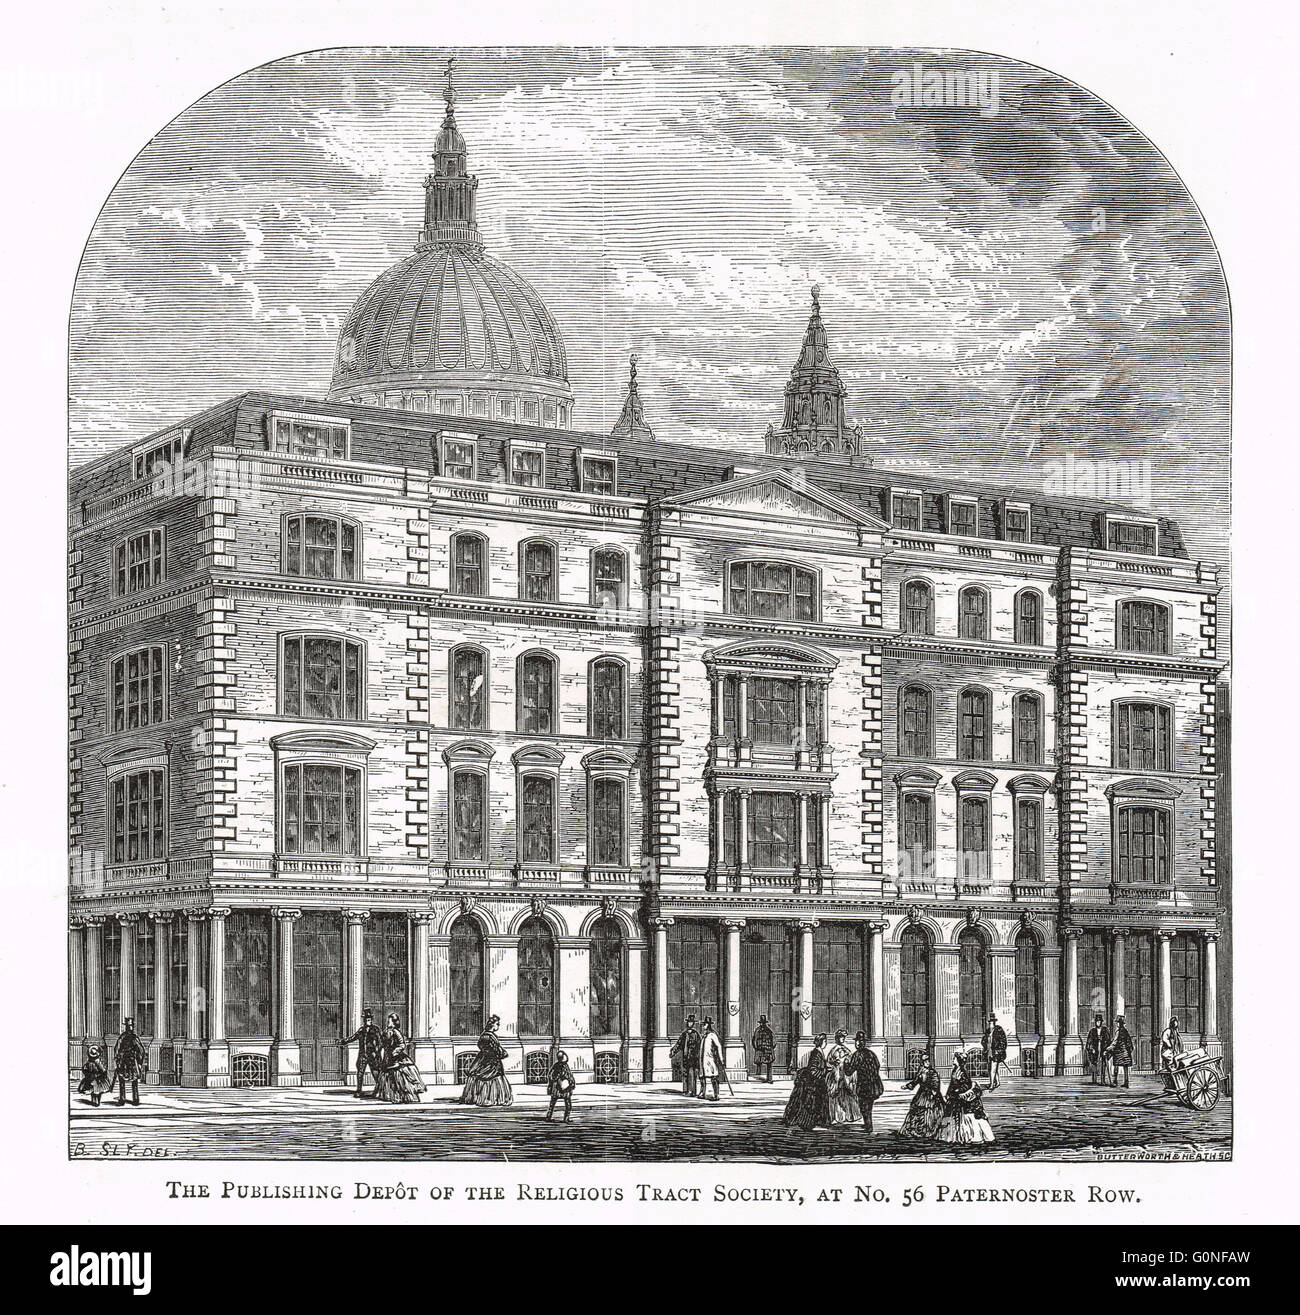 La publicación de los religiosos depot Tract Society, 56 Paternoster Row, Londres, Inglaterra, en el siglo XIX Foto de stock